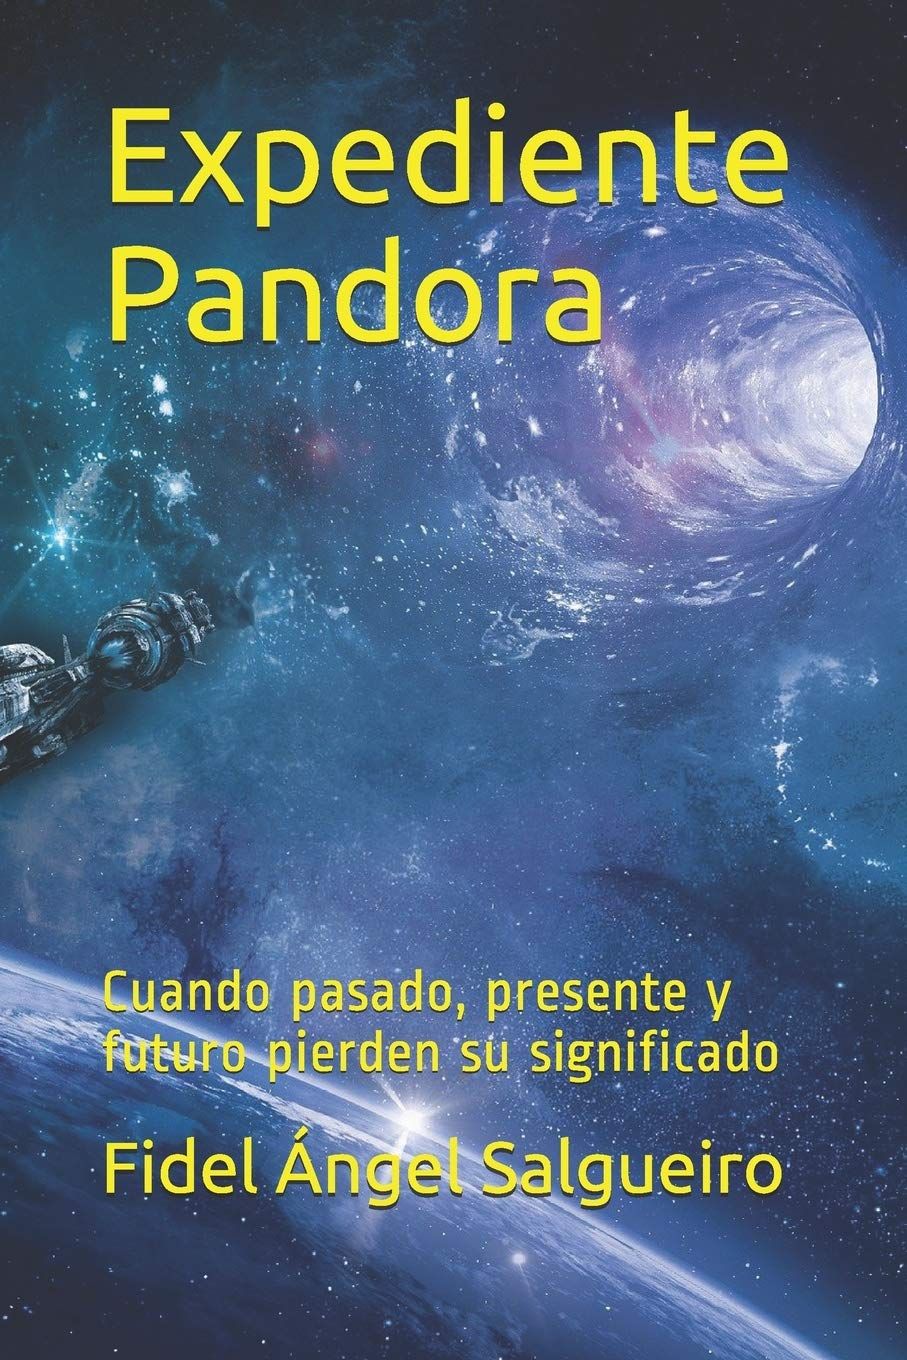 'Expediente Pandora', una historia donde pasado, presente y futuro se entretejen como un todo